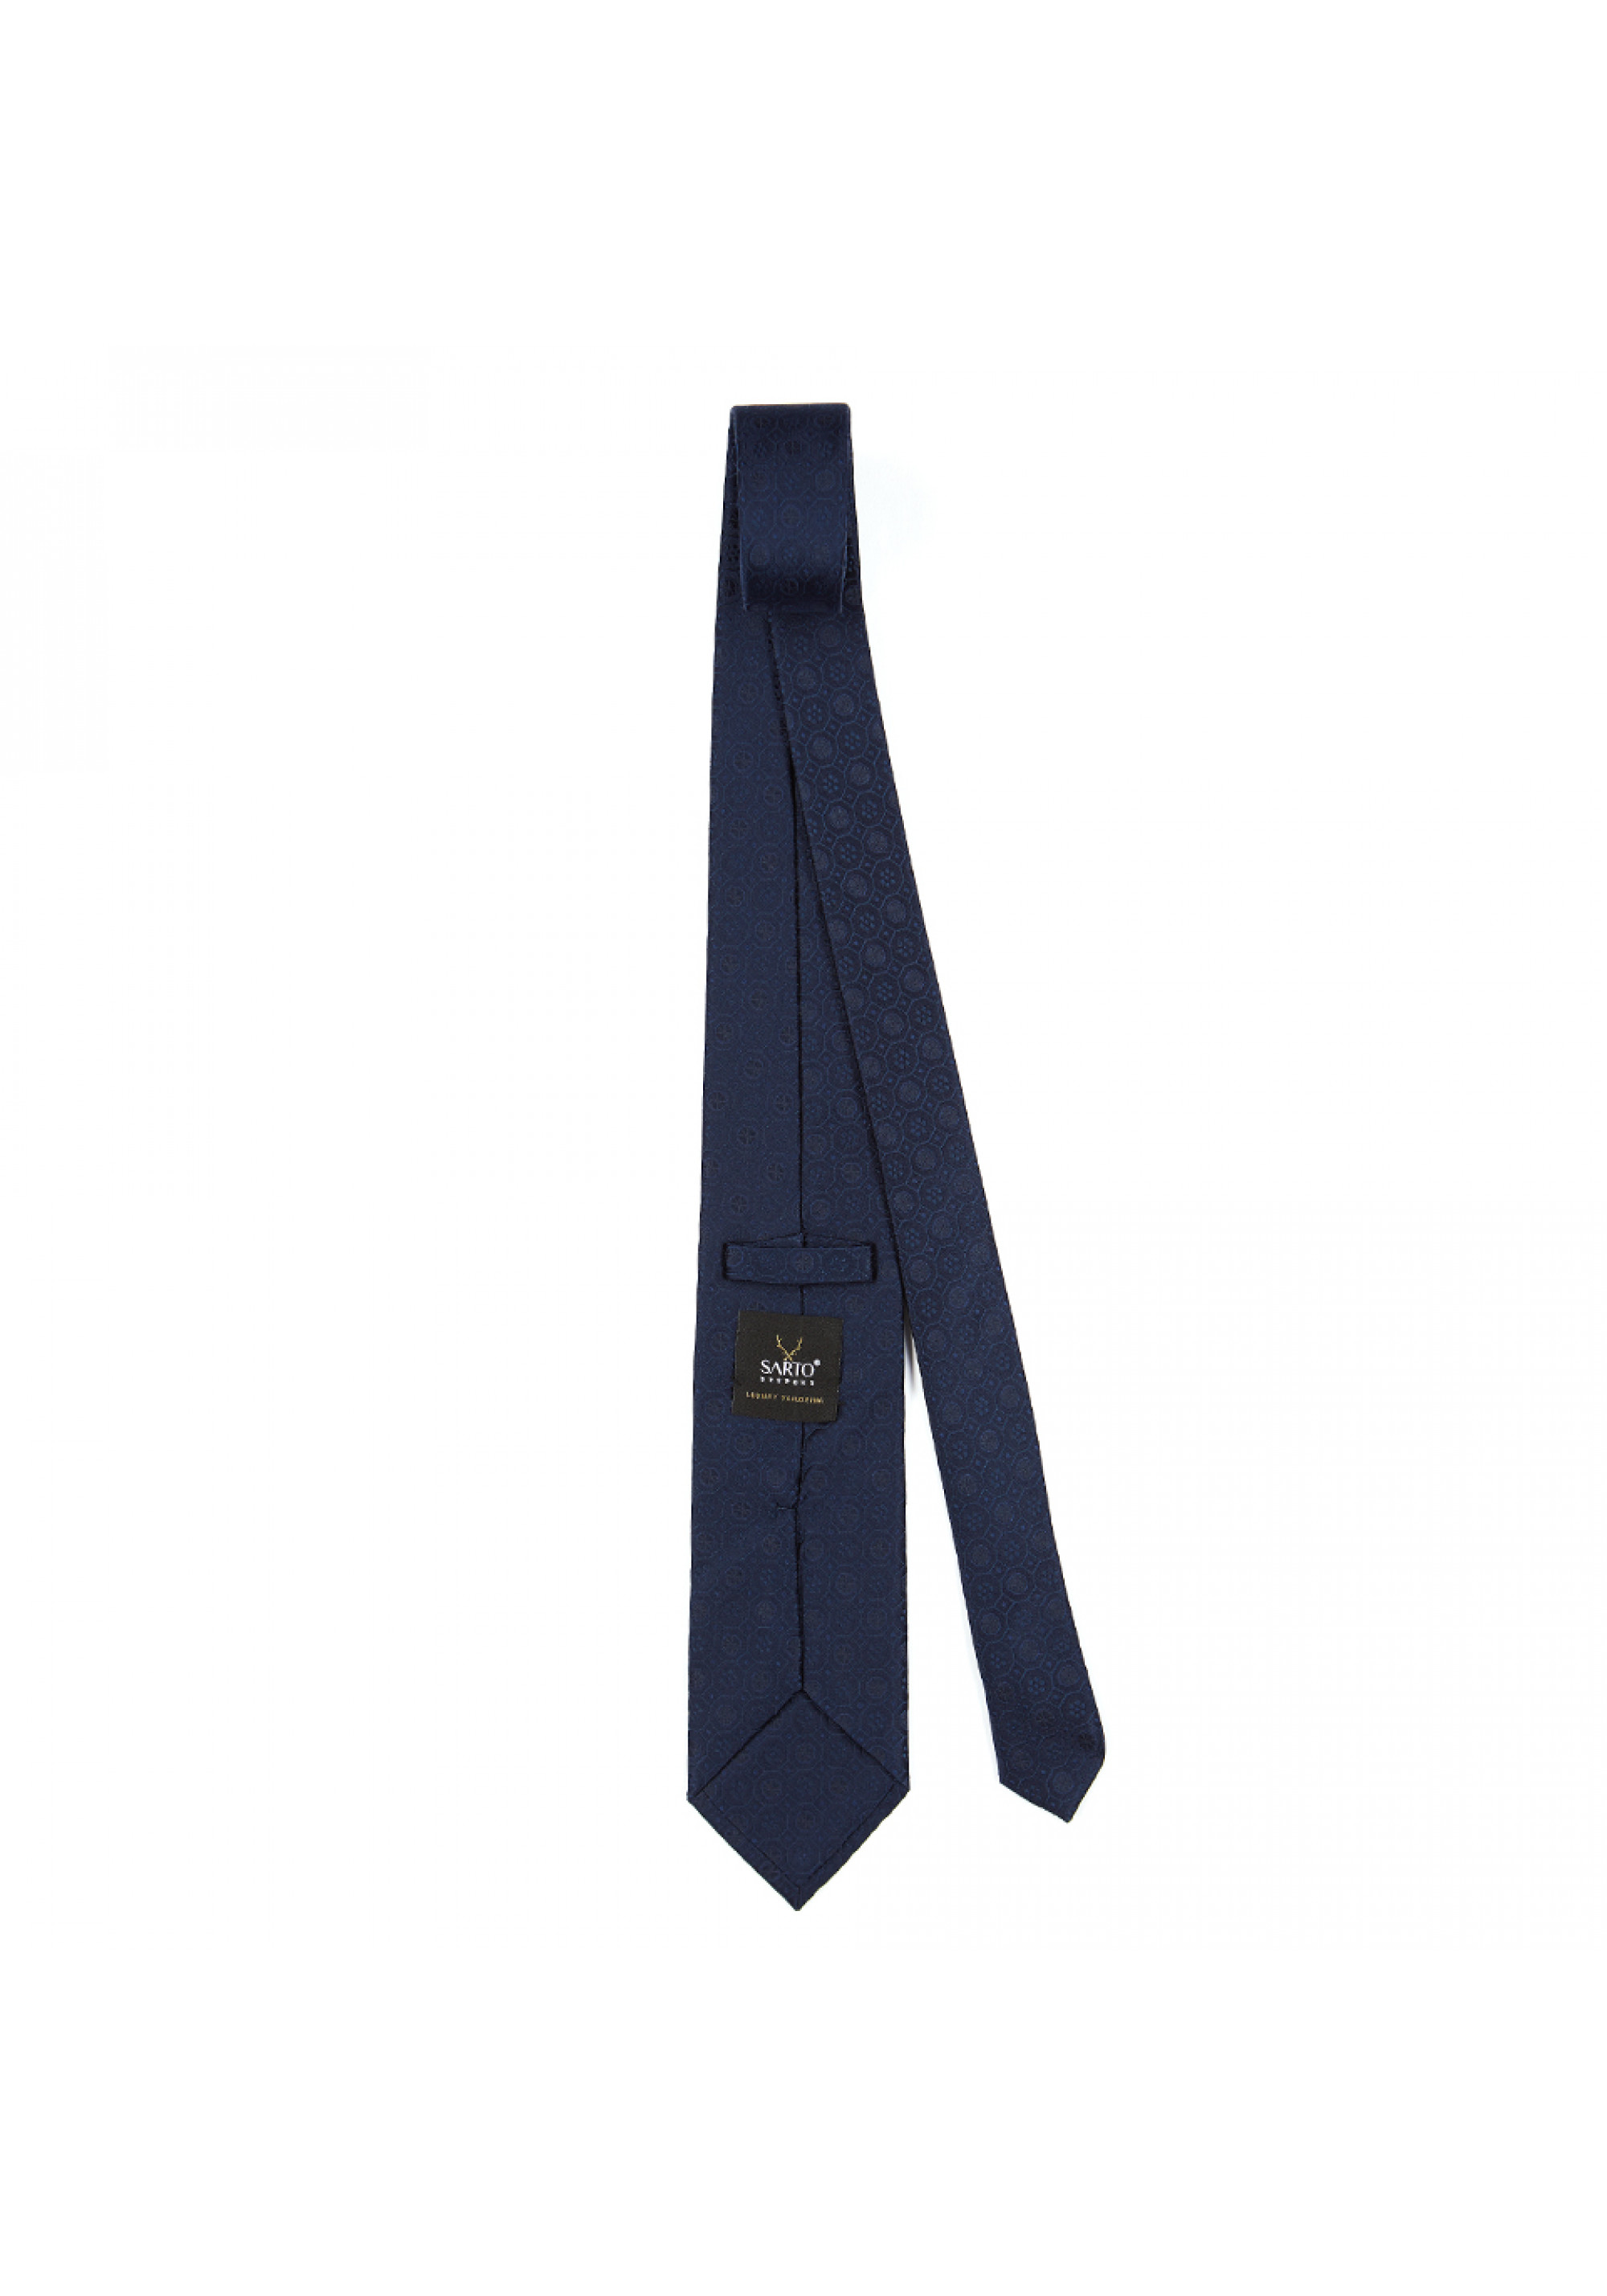 Cravata Albastra York